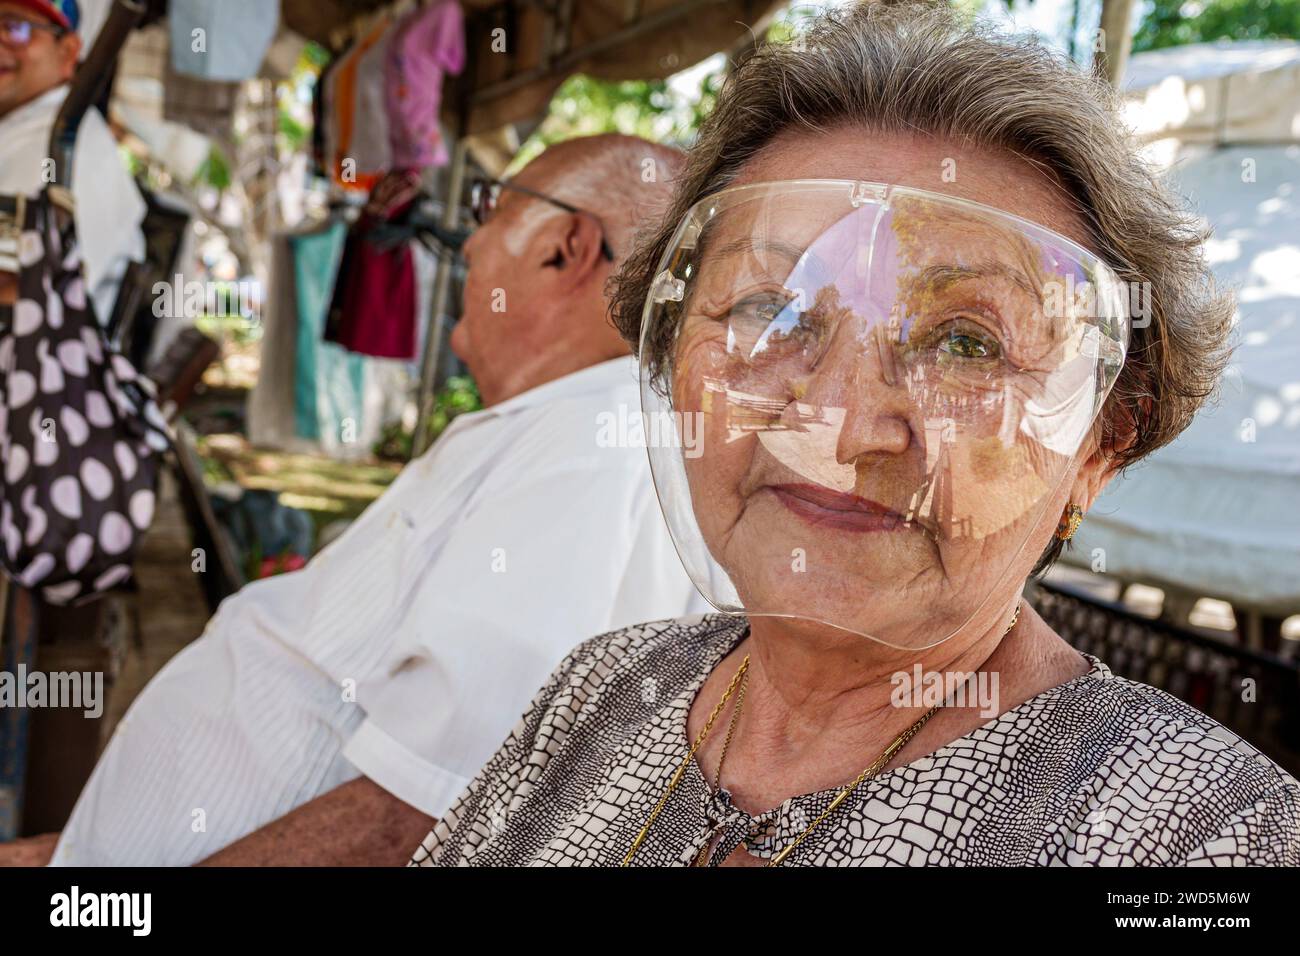 Merida Mexico, centro storico, parco pubblico Plaza grande, donna anziana che indossa una maschera trasparente protettiva completa, Covid-19 Foto Stock